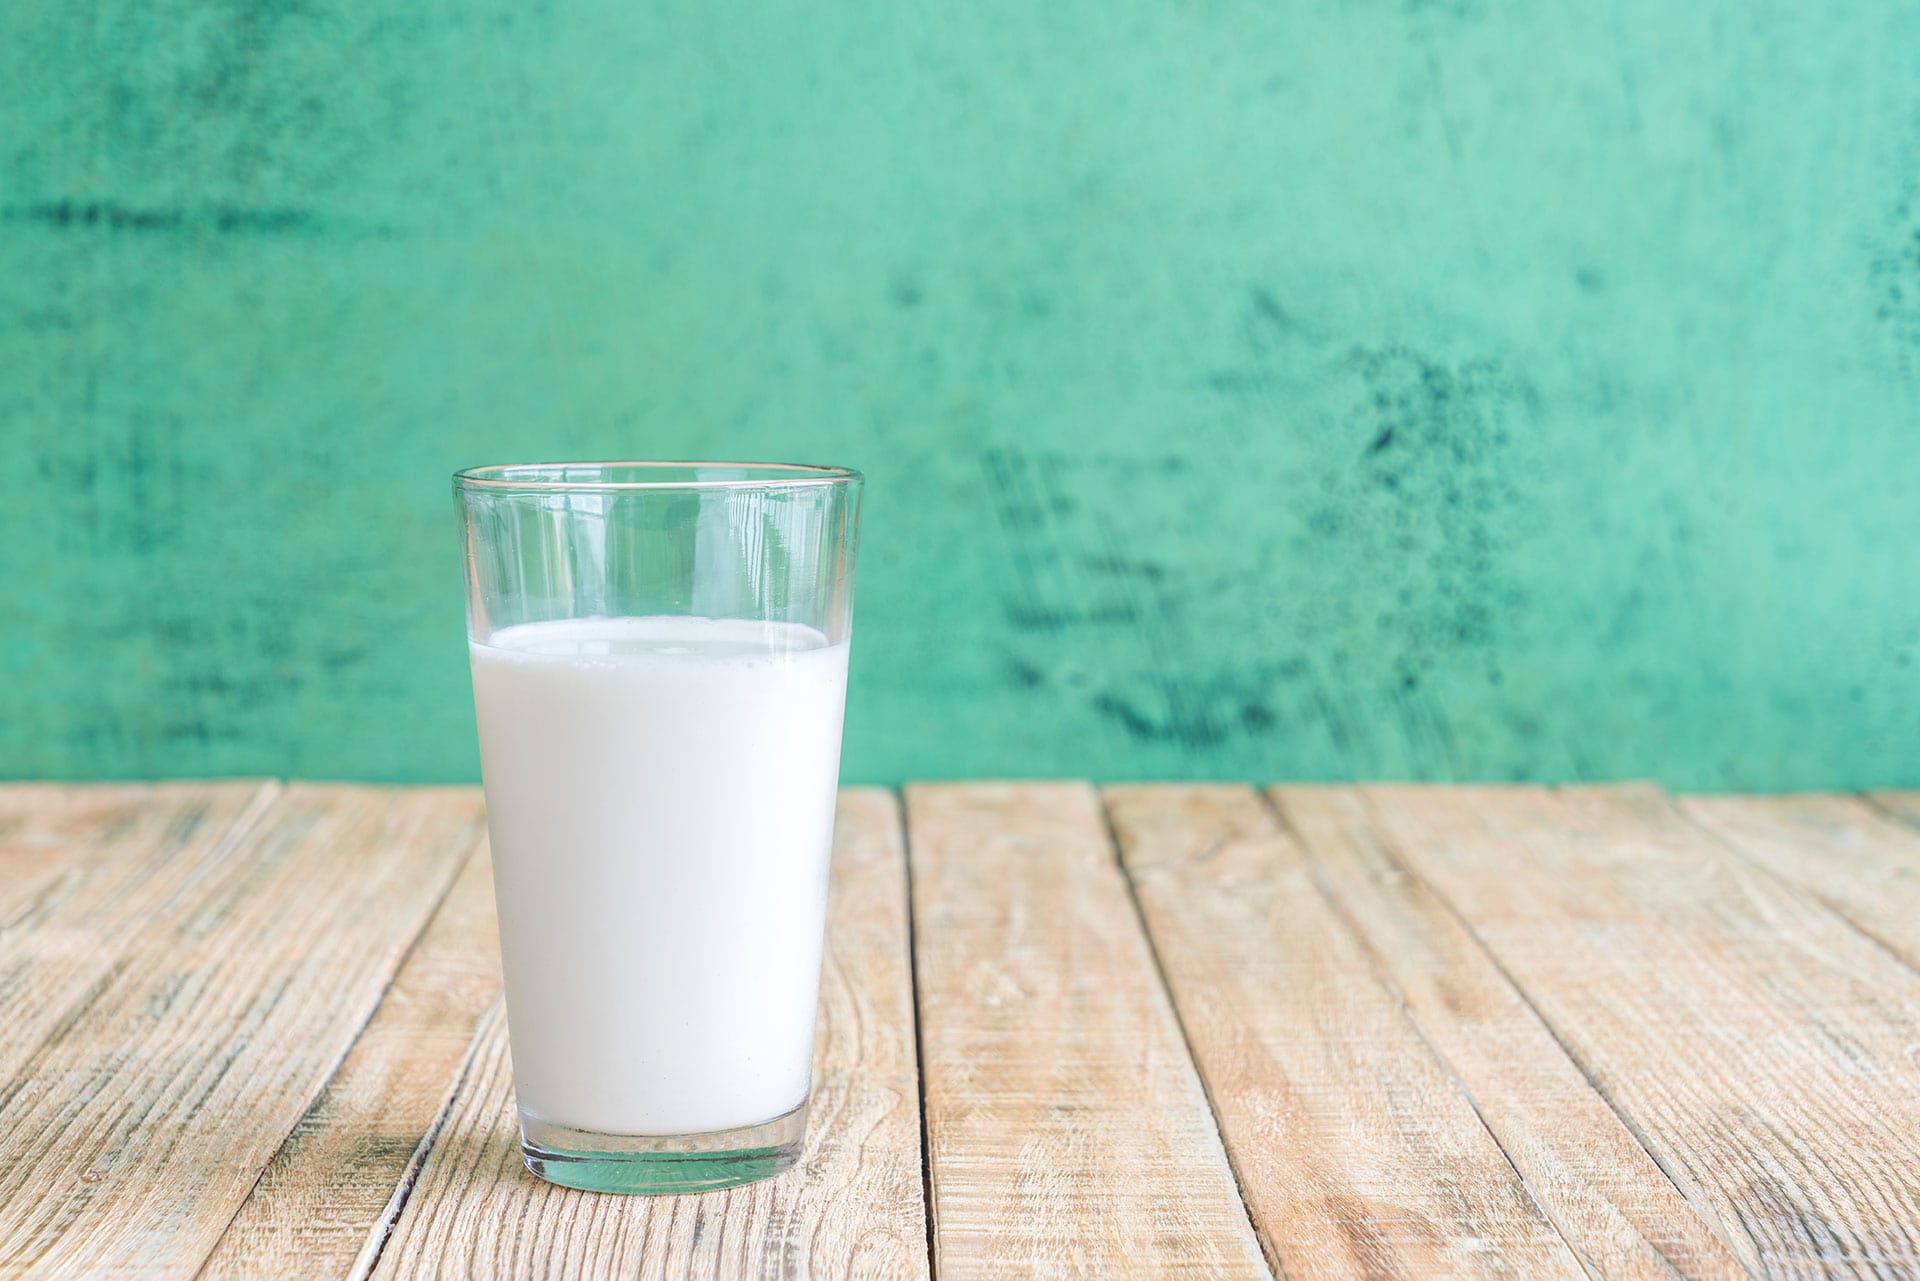 Laktoza, czyli cukier mleczny - czym jest i czy warto się jej obawiać?